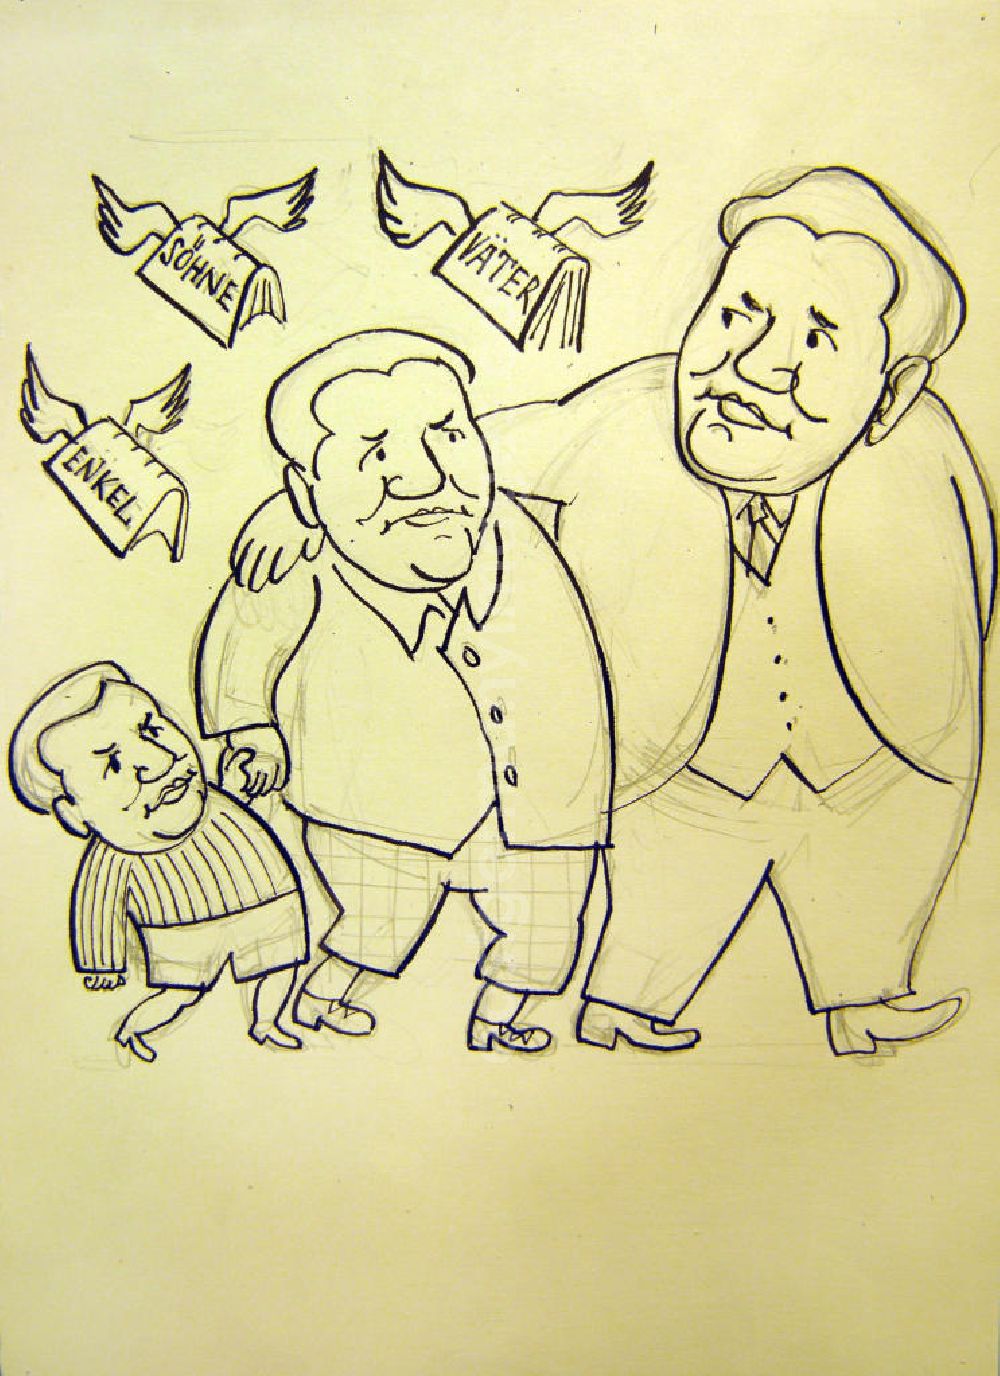 GDR photo archive: Berlin - Zeichnung von Herbert Sandberg Enkel, Söhne, Väter, 21,6x20,